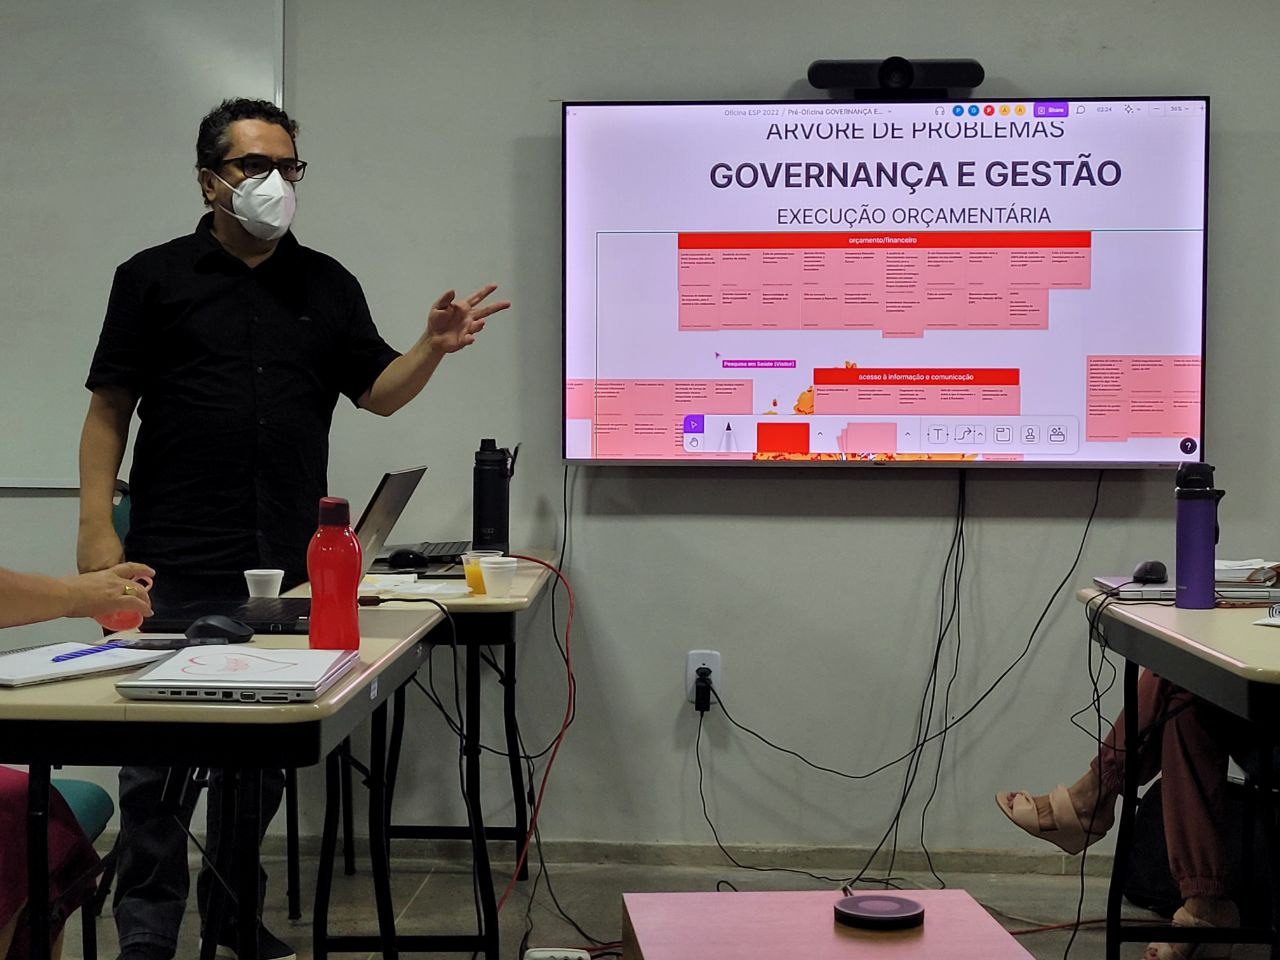 Para Paulo Amoreira, as oficinas articulam camadas essenciais da governança colaborativa